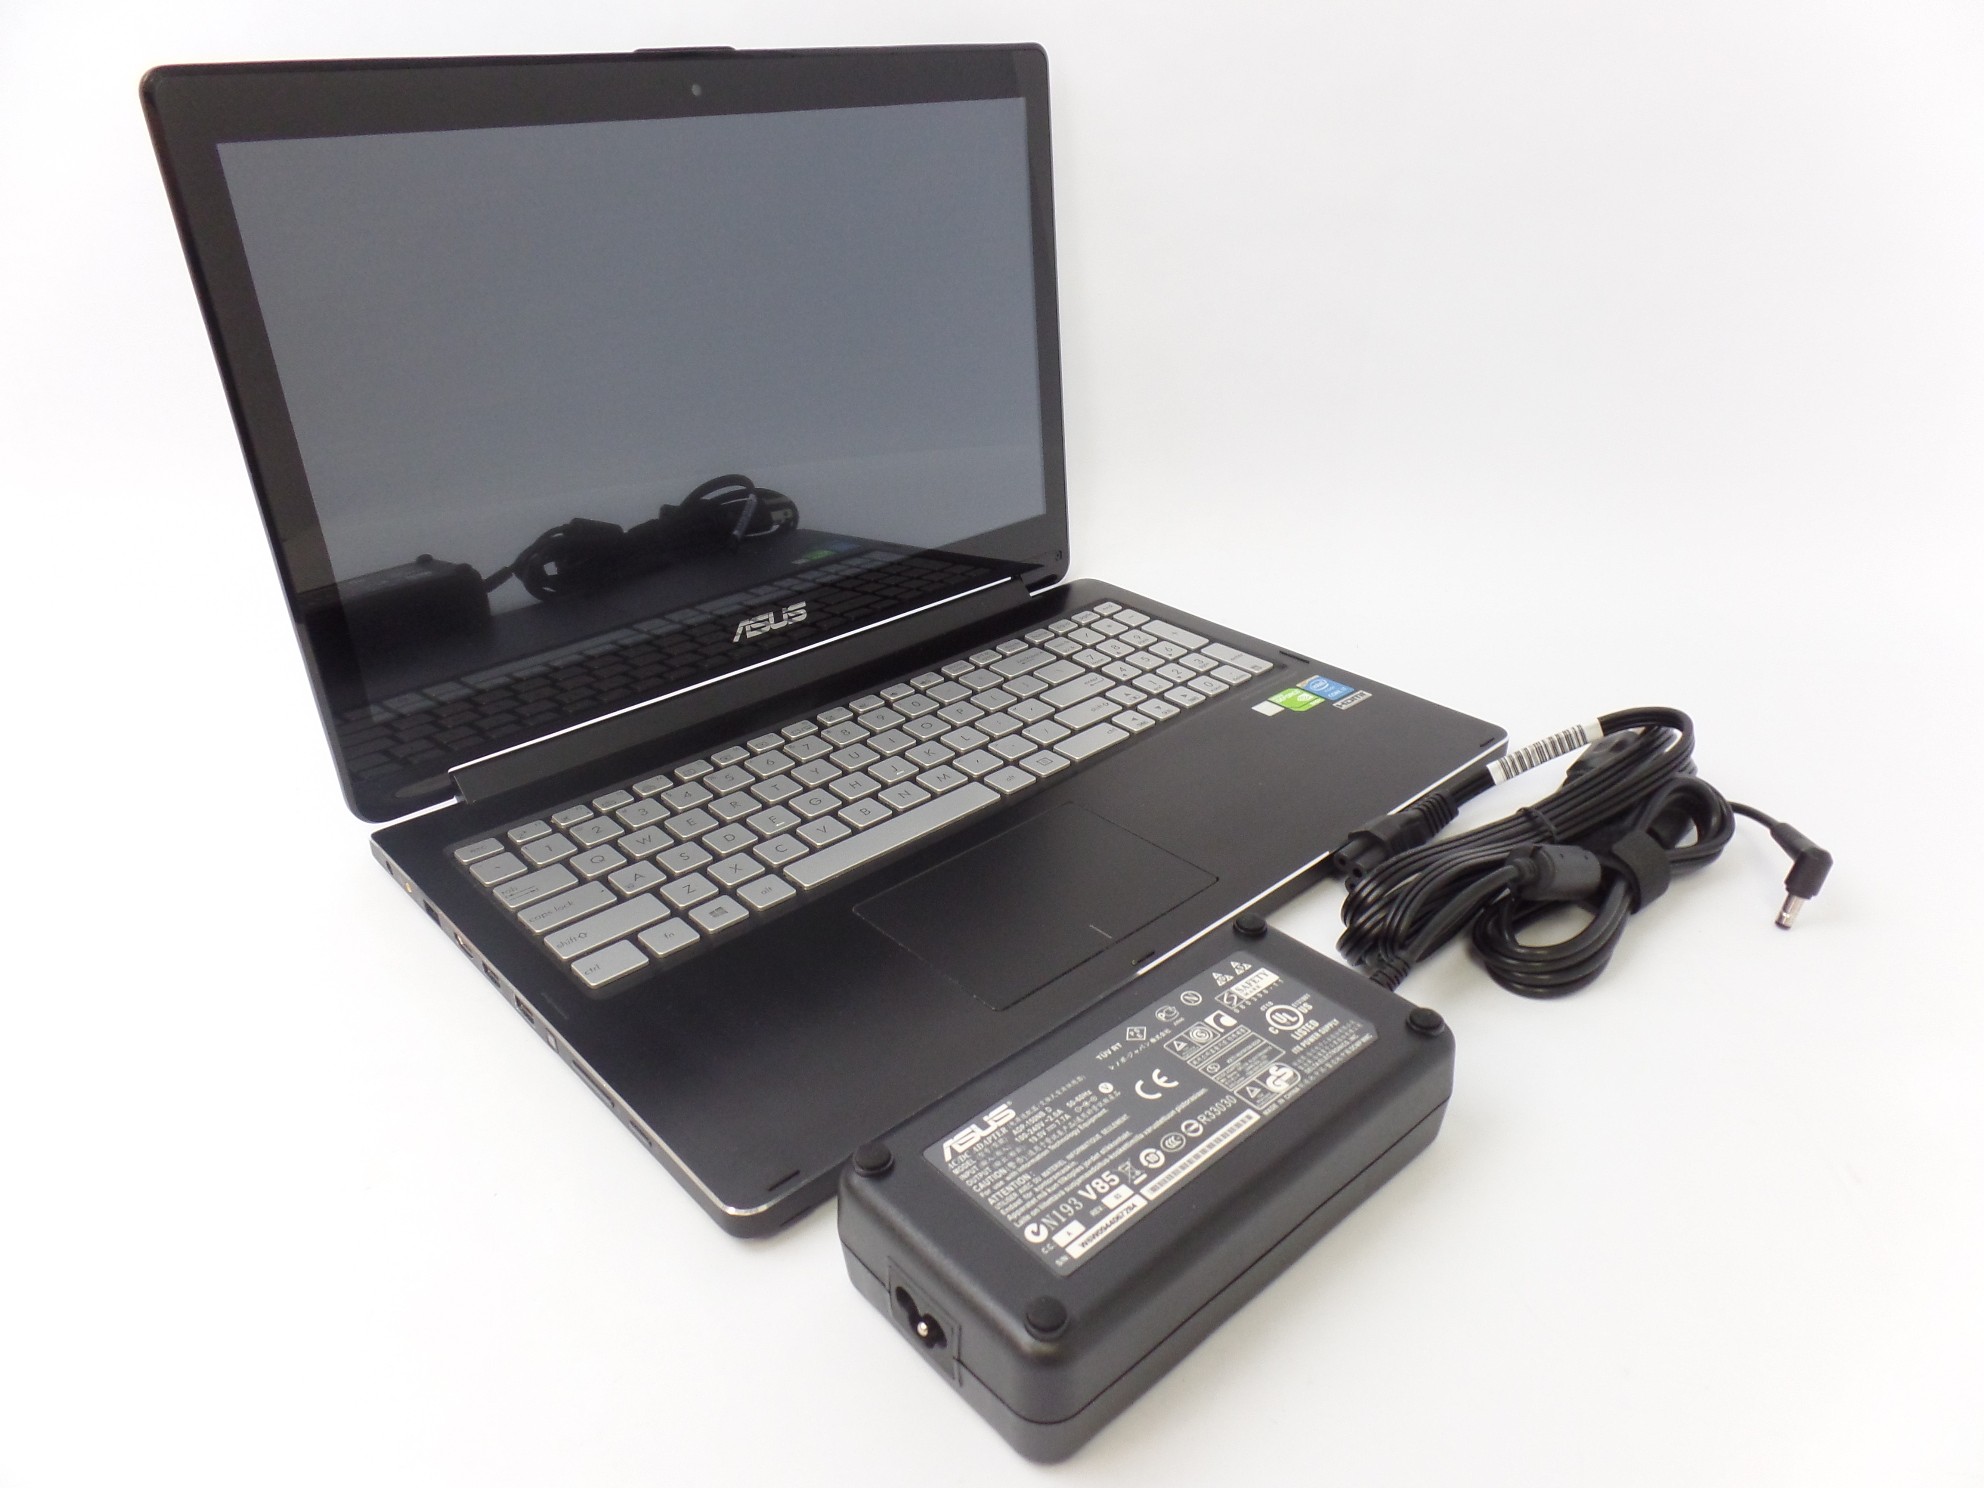 ASUS Q551 15.6" FHD Touch i7-5500U 2.4GHz 8GB 1TB GeForce 940M W10 2in1 Laptop